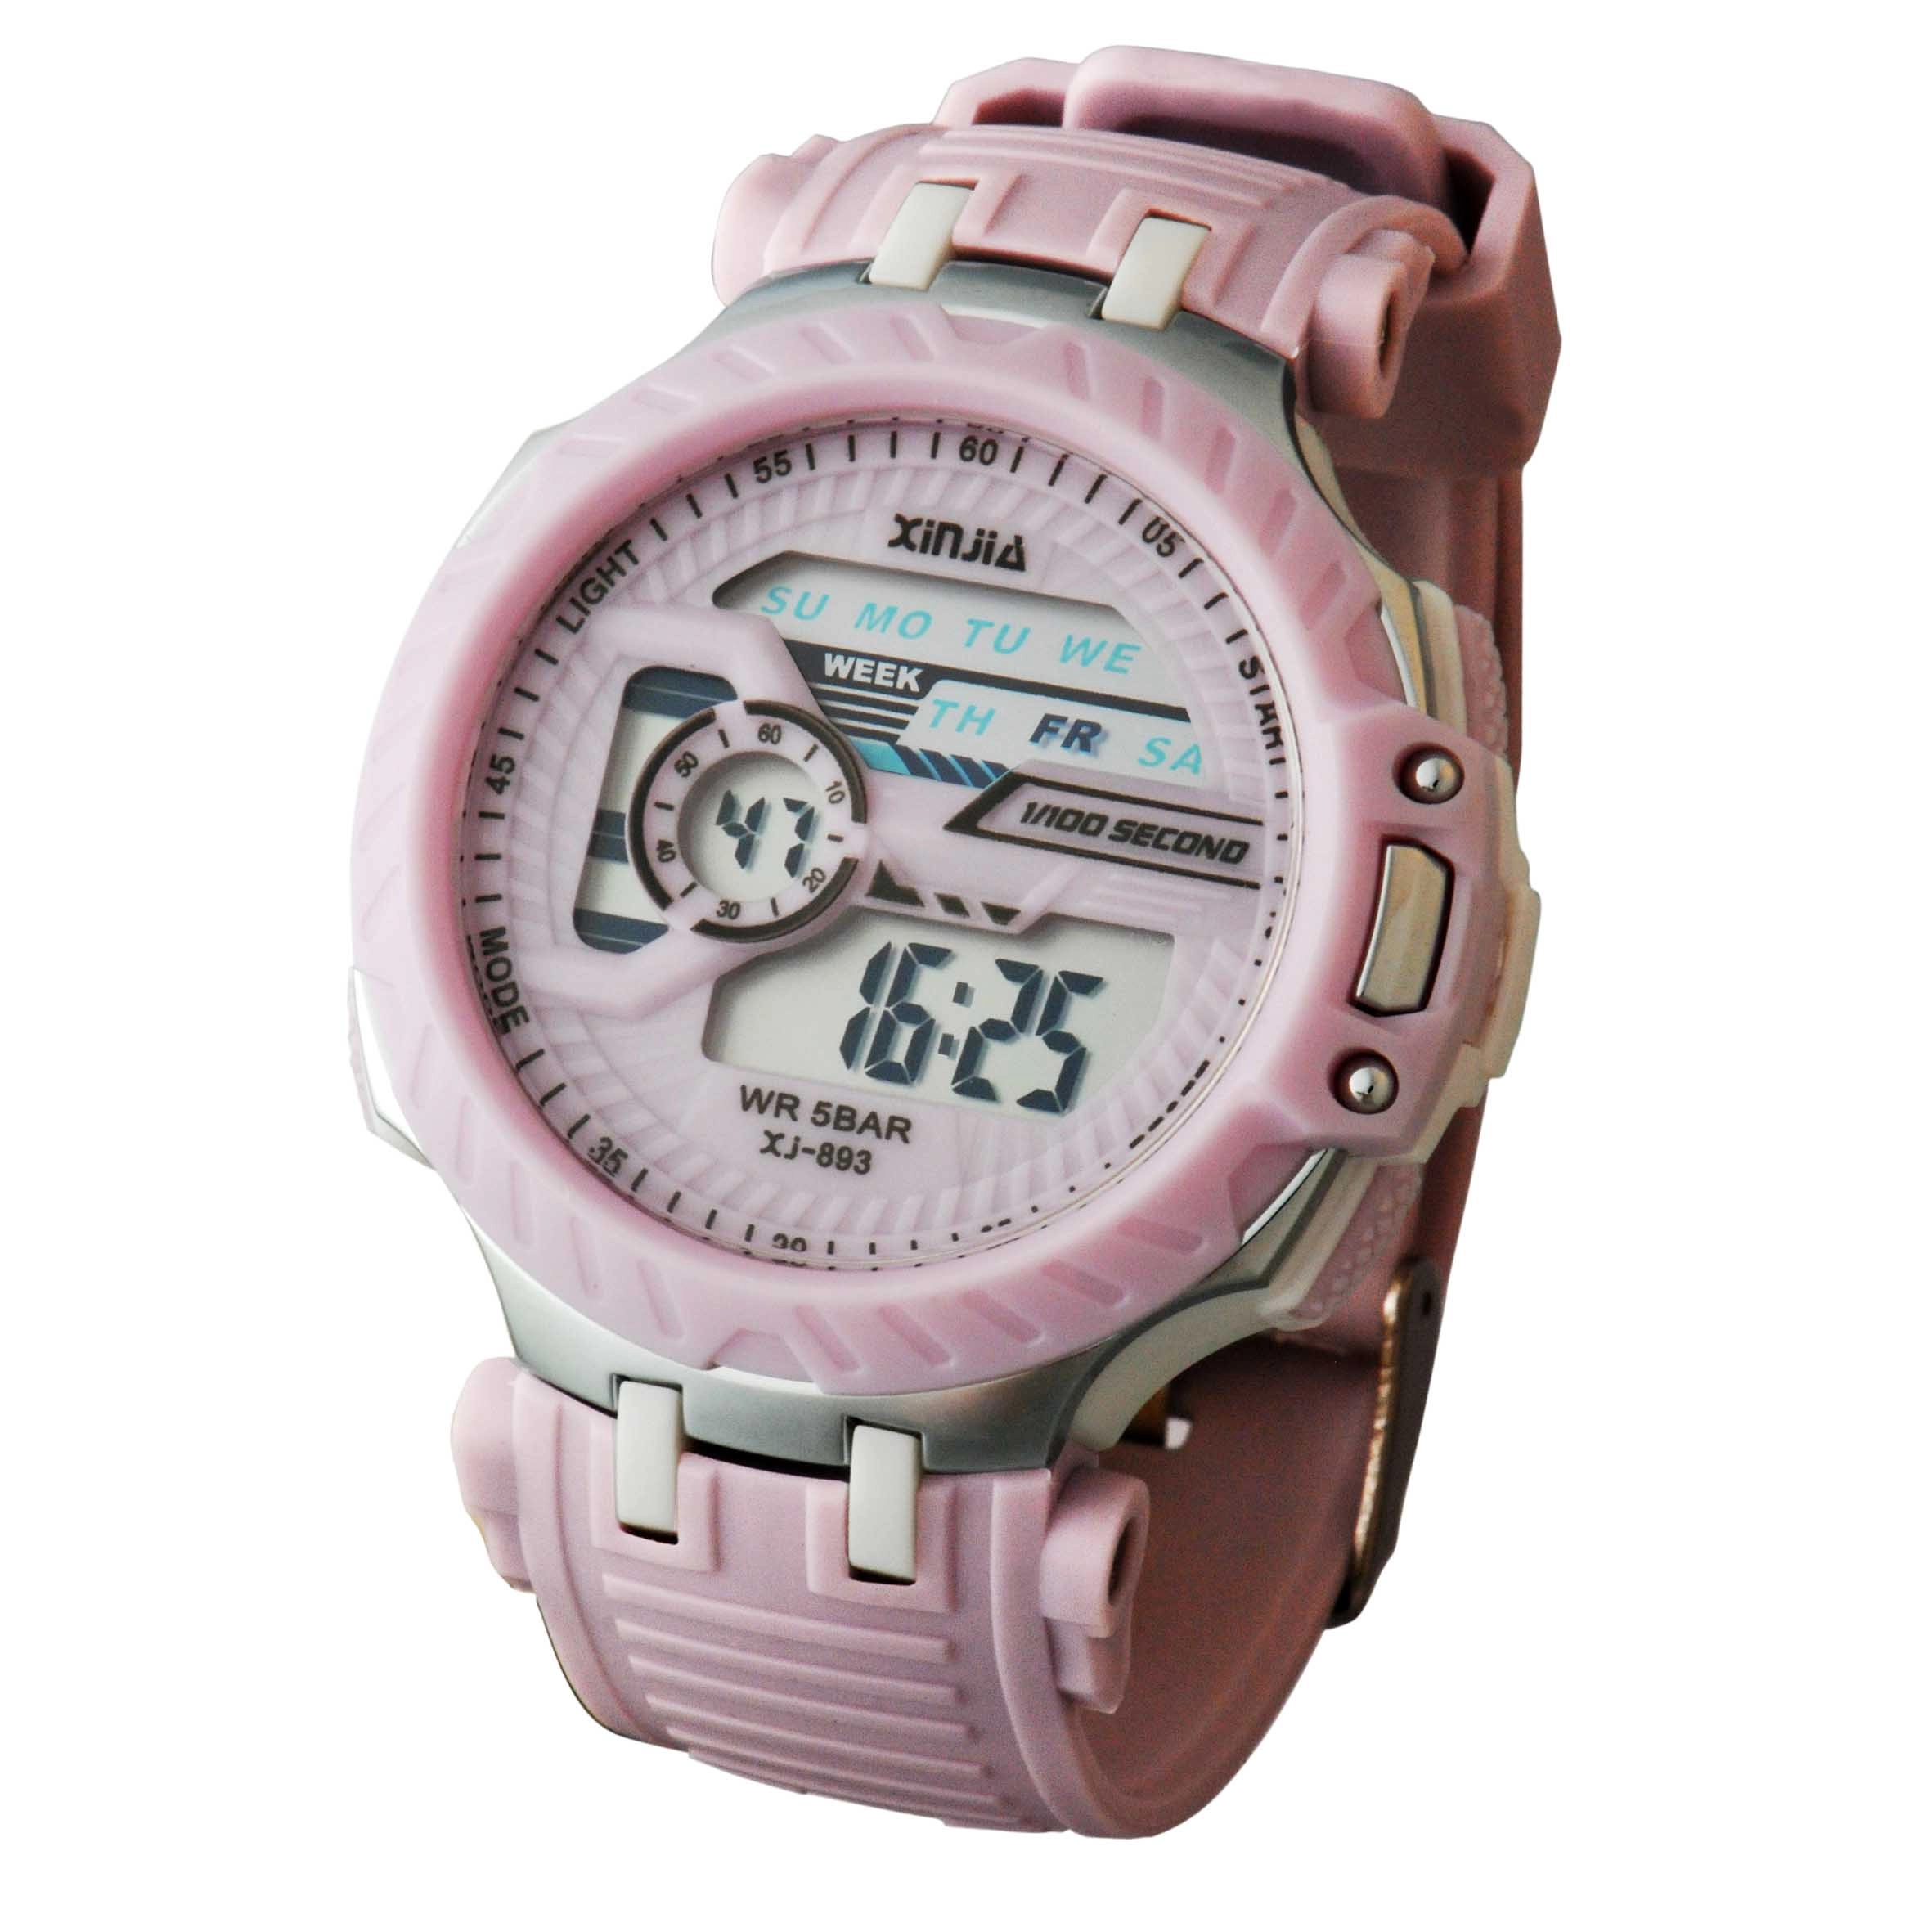 Energetic Series Candy Girl Waterproof Digital Wrist Watch